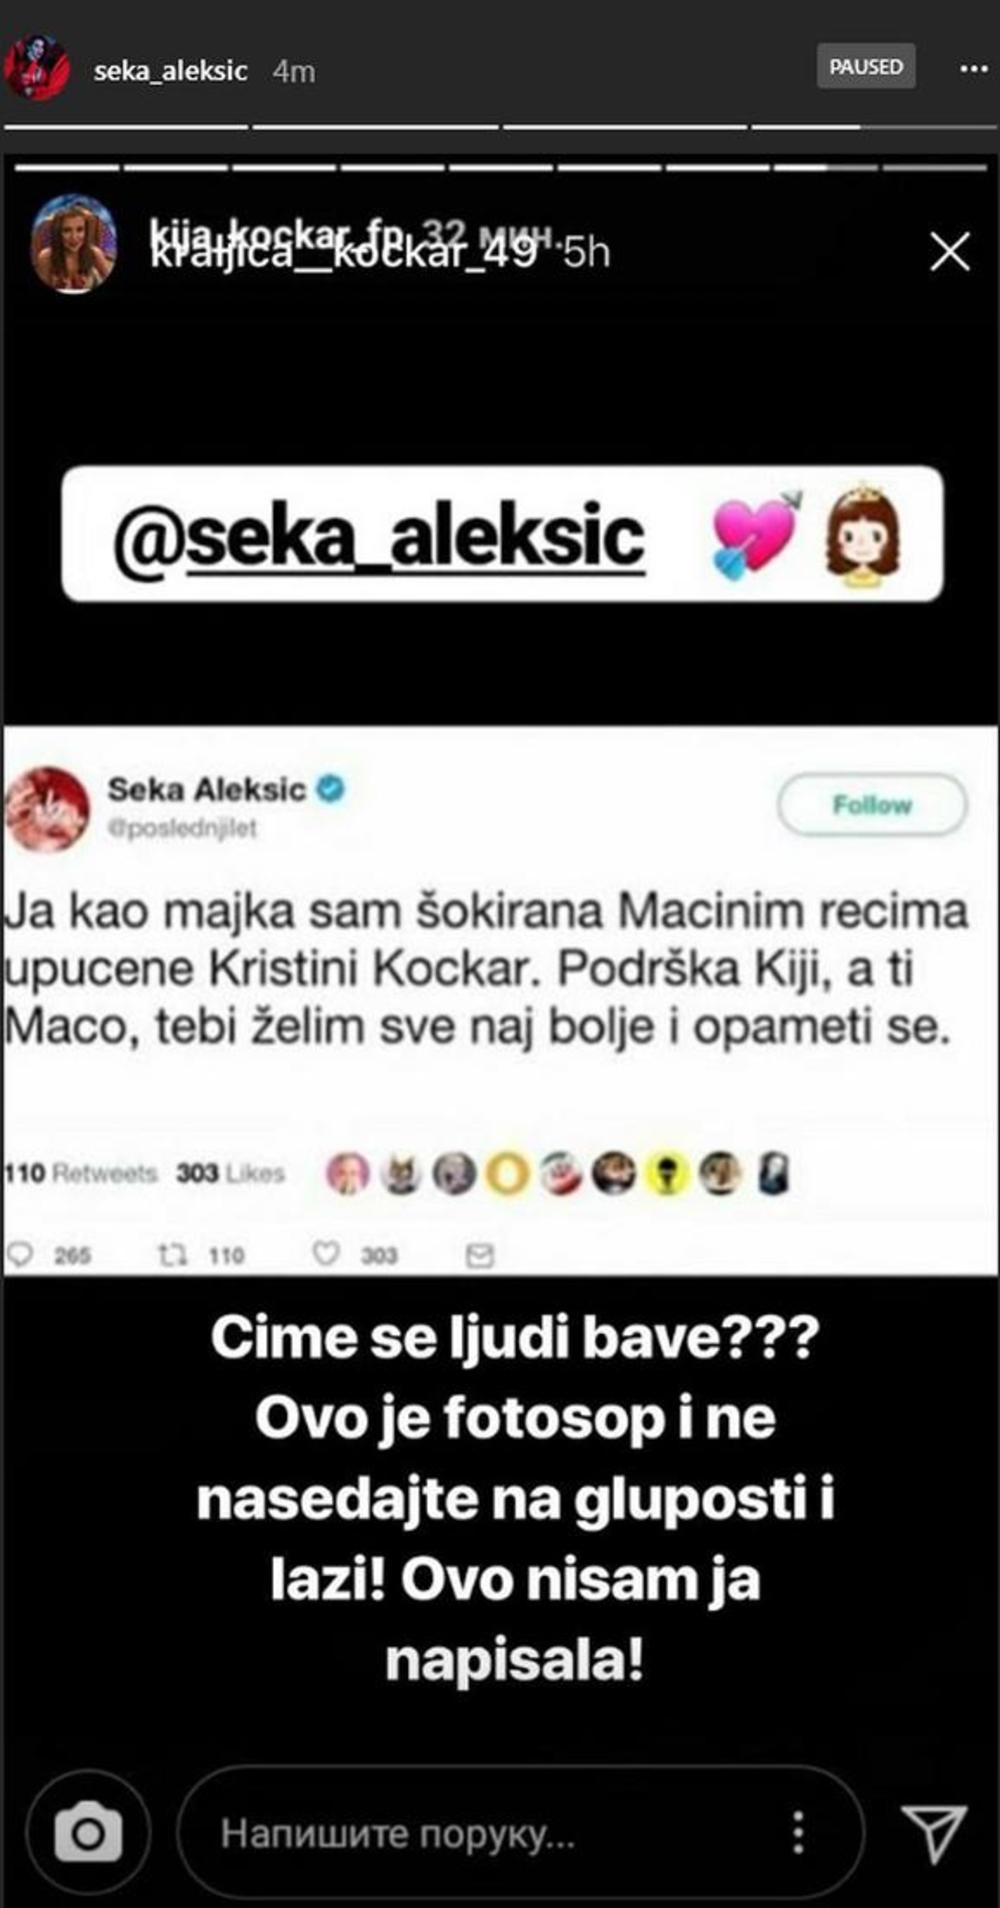 Seka je na svom Instagram profilu demantovala da je ona napisala tvit podrške Kiji Kockar  